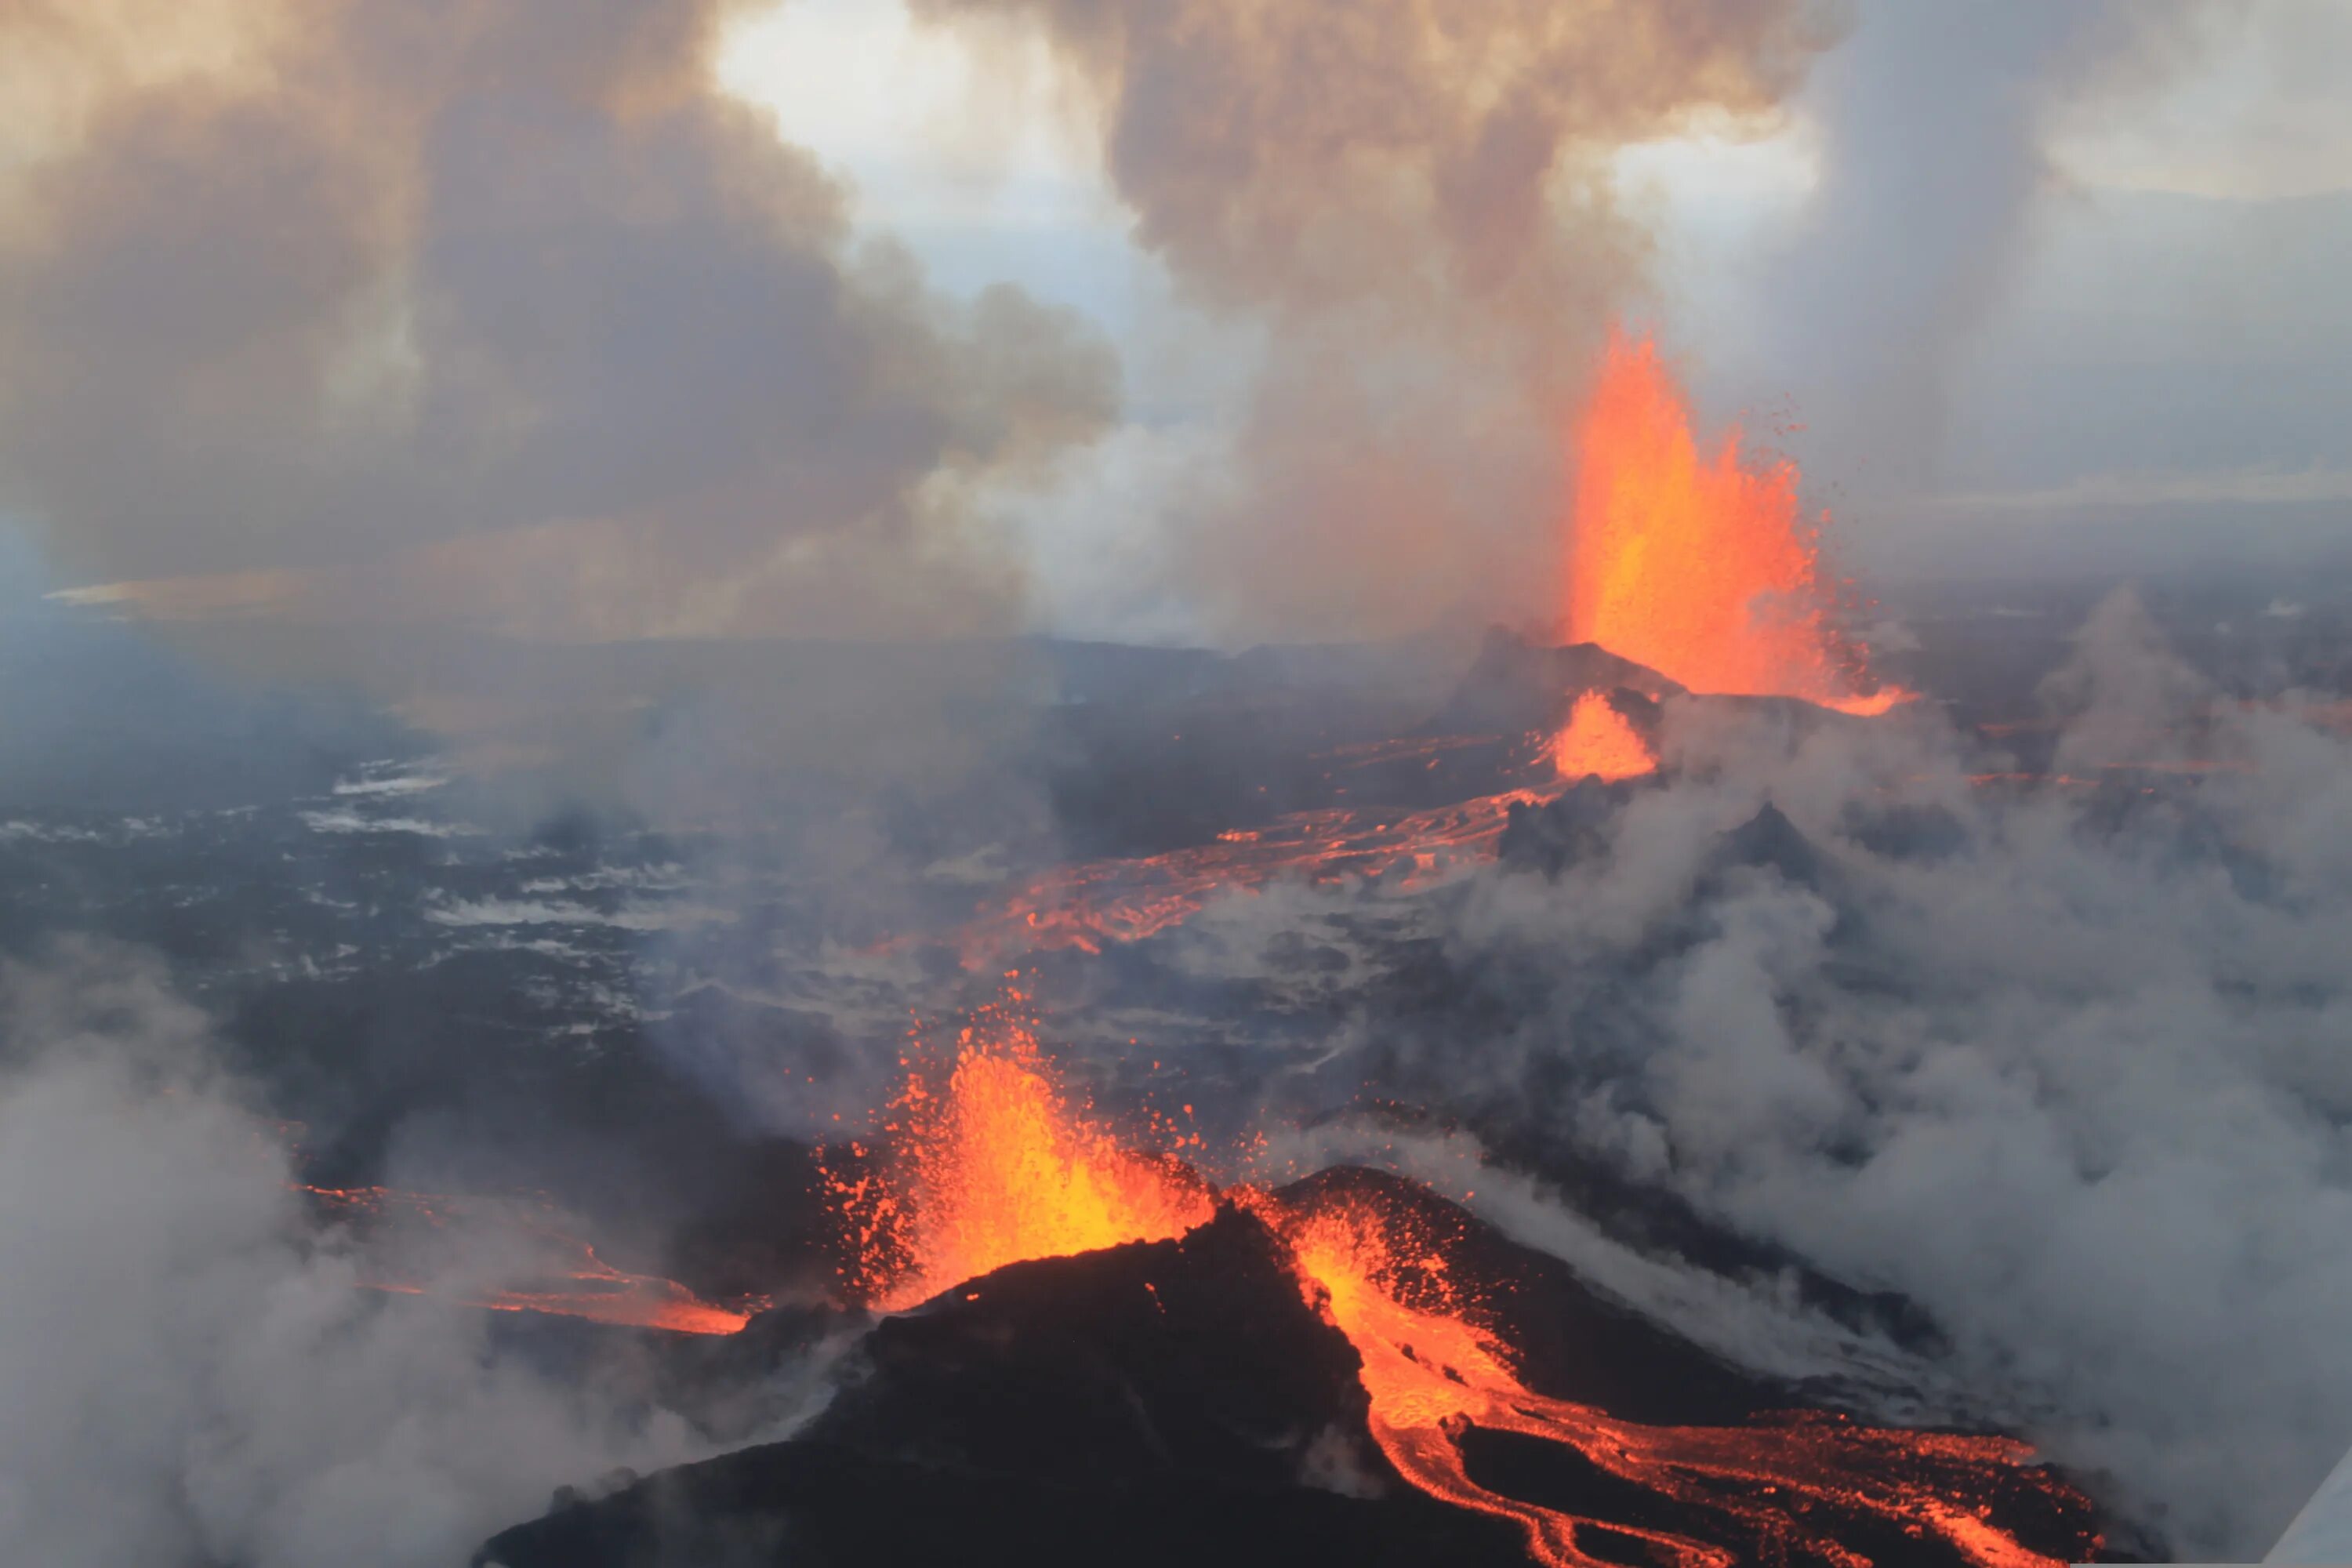 Сильные землетрясения извержения вулканов мощные гейзеры. Вулкан Бардарбунга. Извержение вулкана в Исландии. Бардарбунга 2014 год Исландия. Природные катастрофы извержения вулканов.